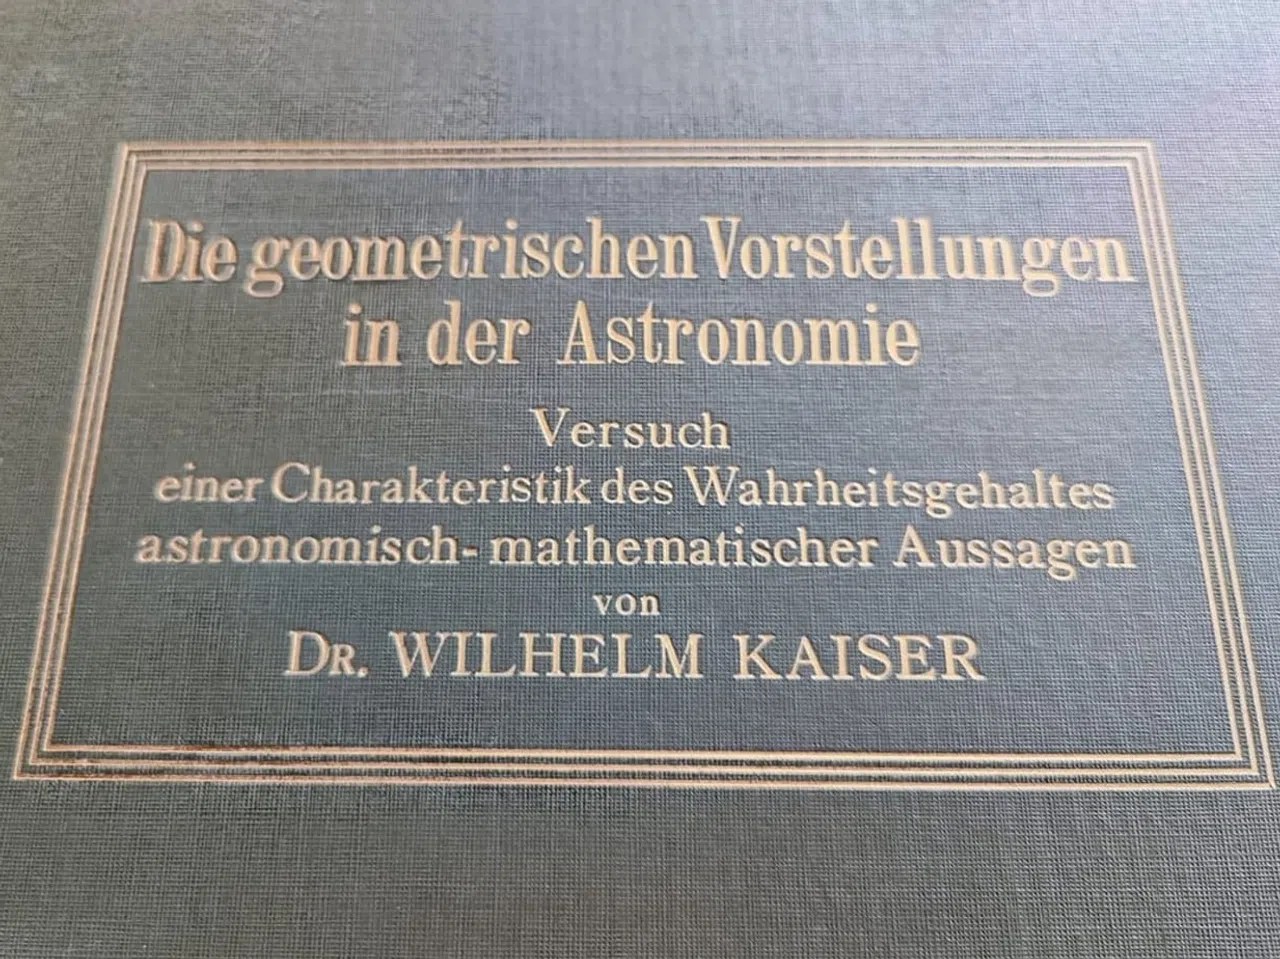 Wilhelm Kaiser错误地认为地球位于宇宙中心。